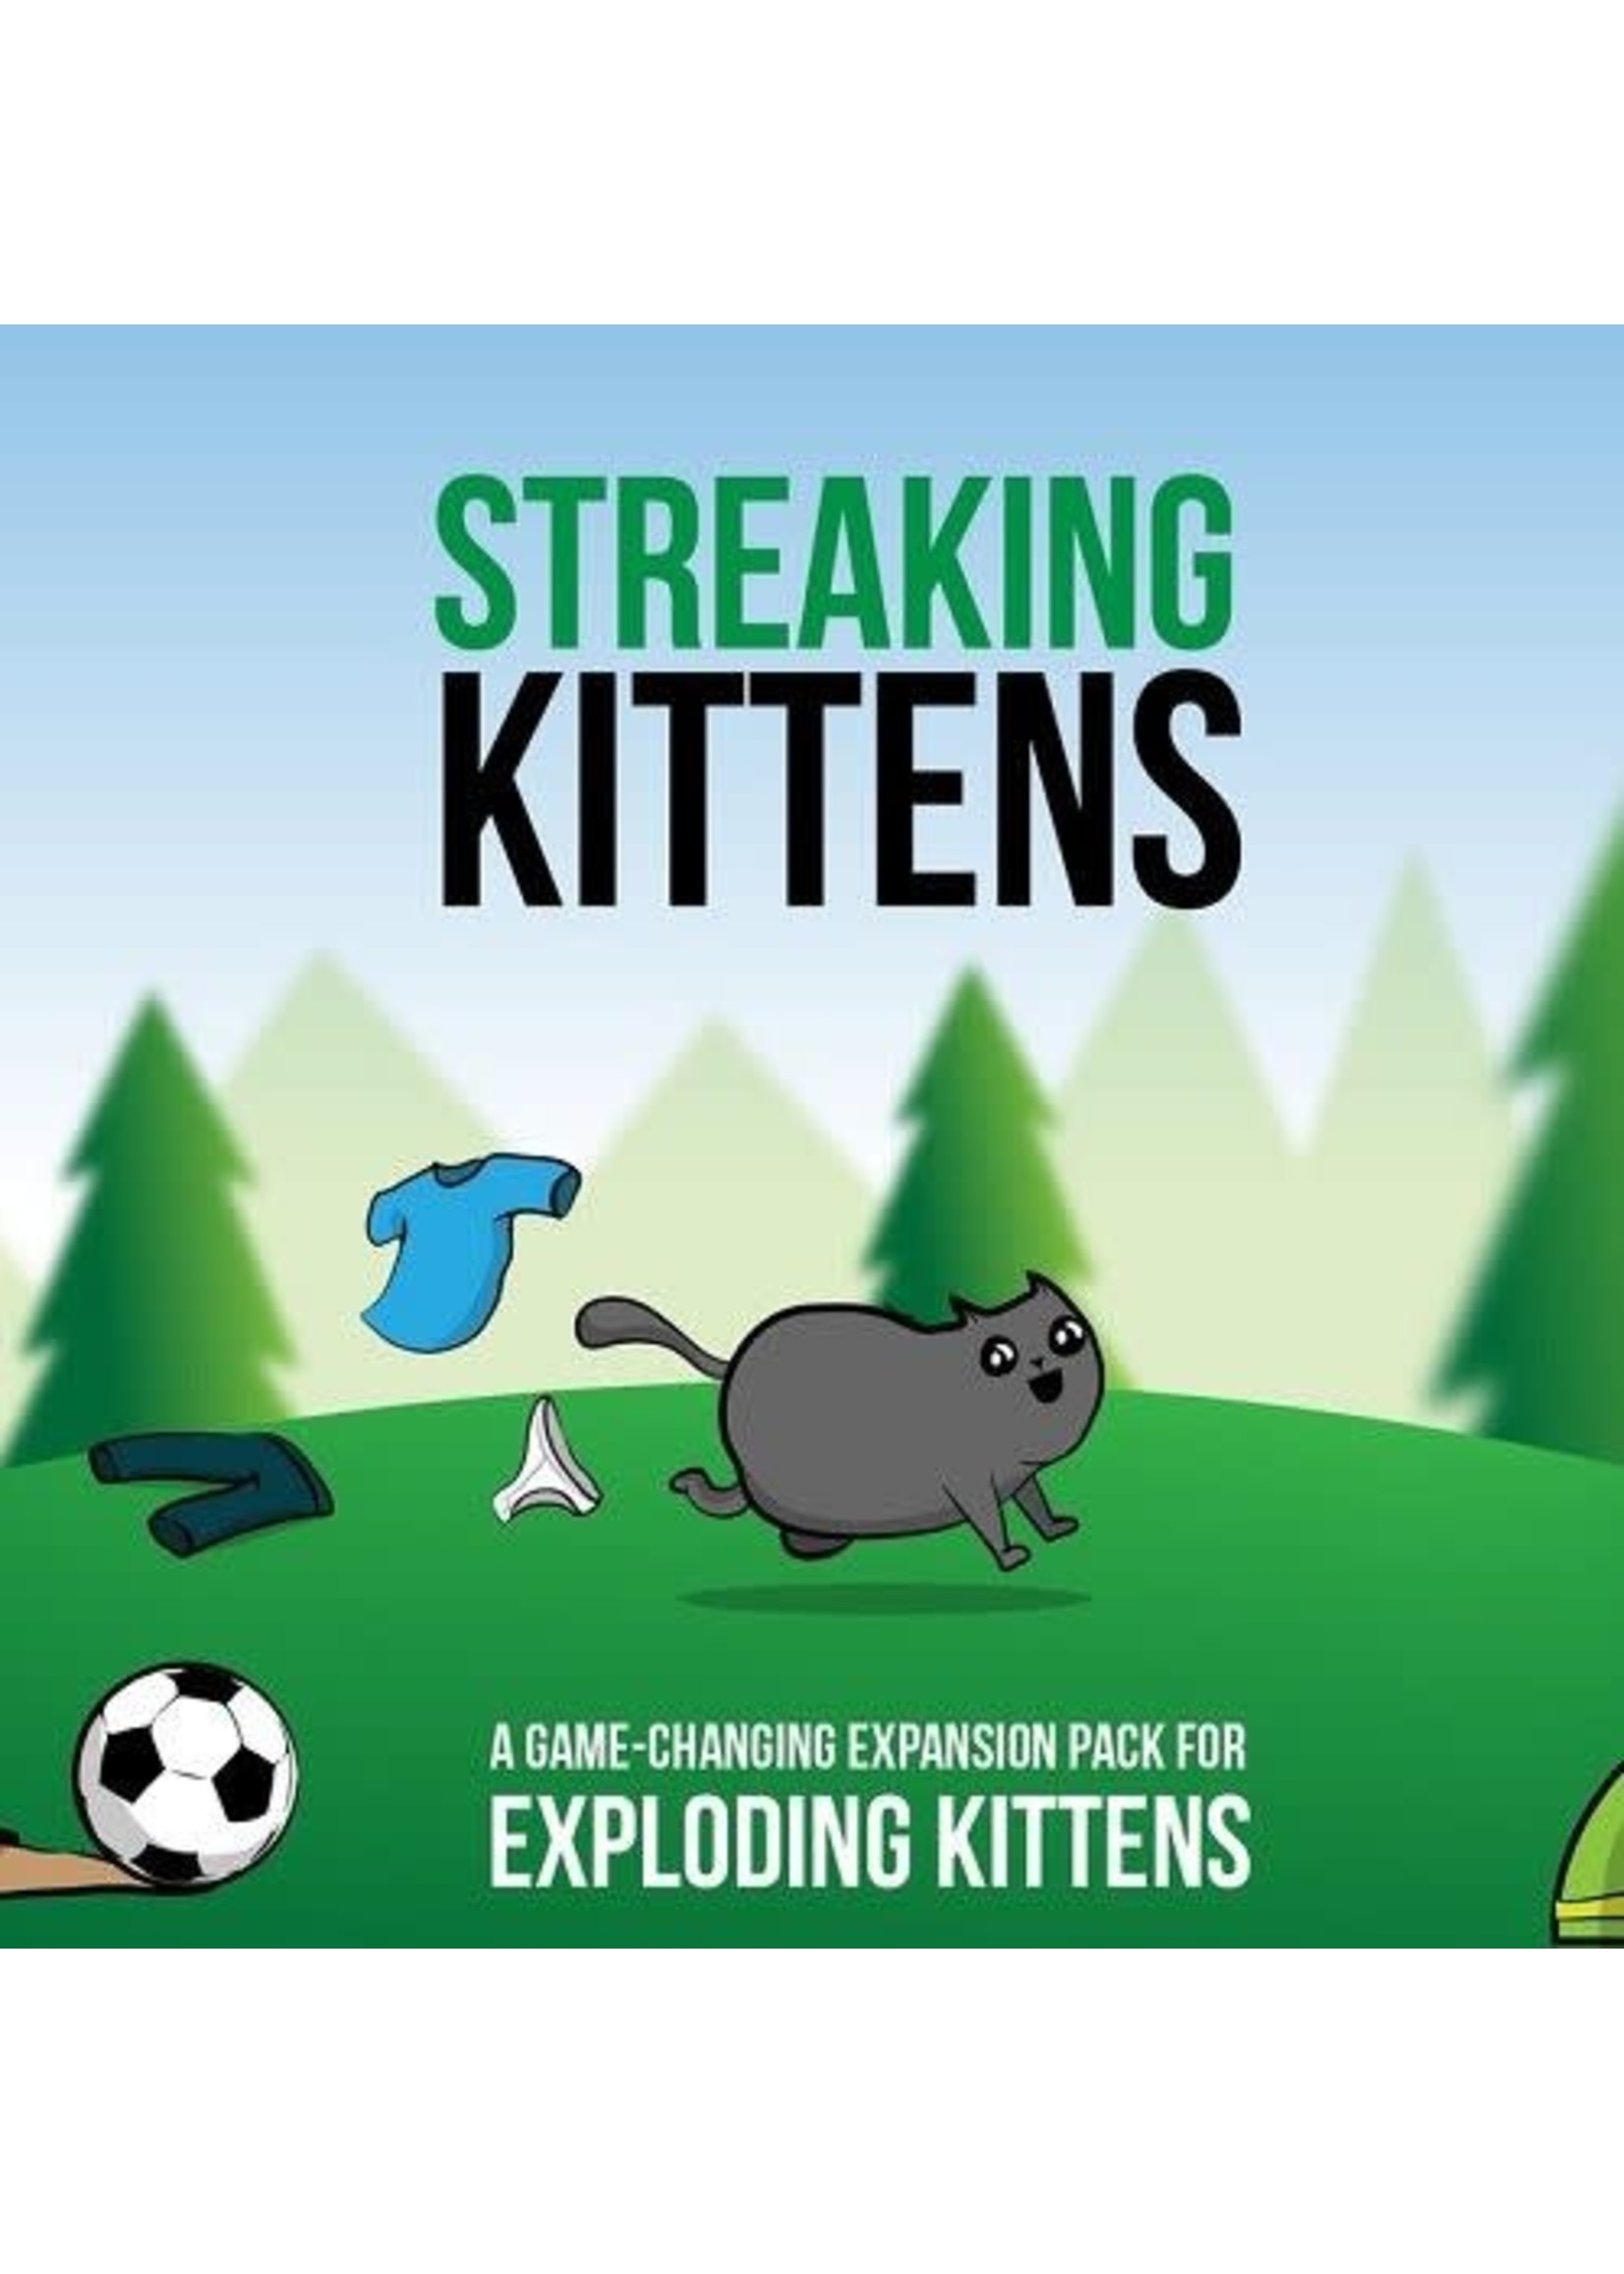 exploding kittens Streaking kittens - Exploding kittens 15 cards expansion pack